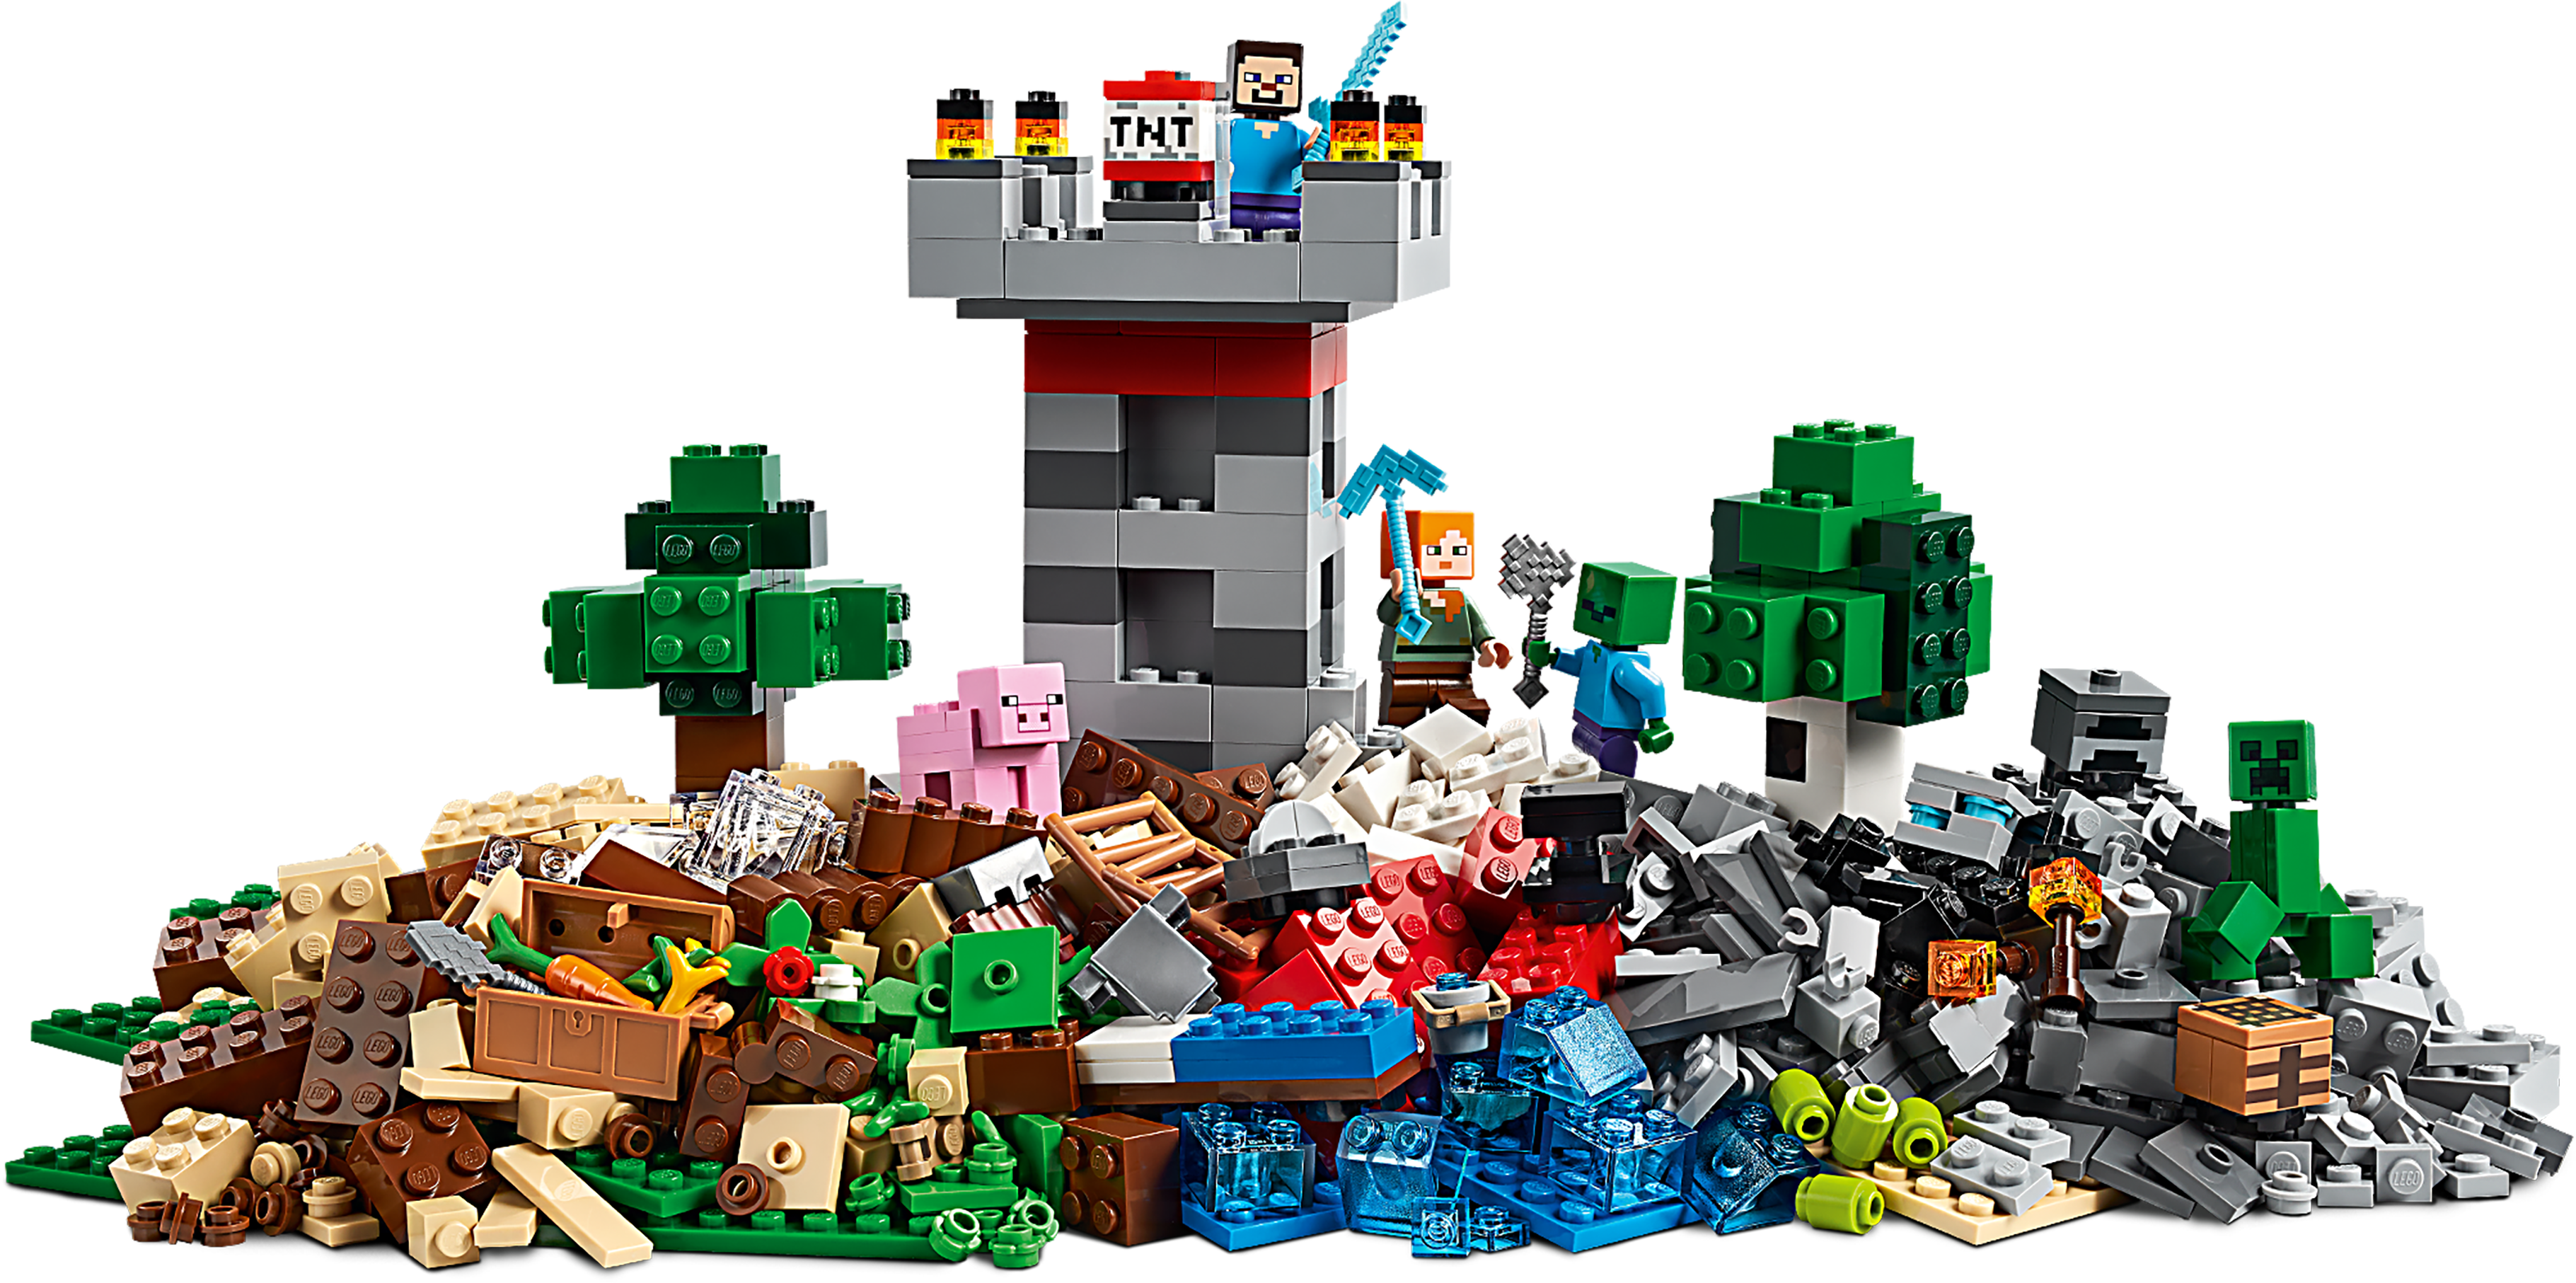 LEGO 21161 Minecraft Crafting Box 3.0 